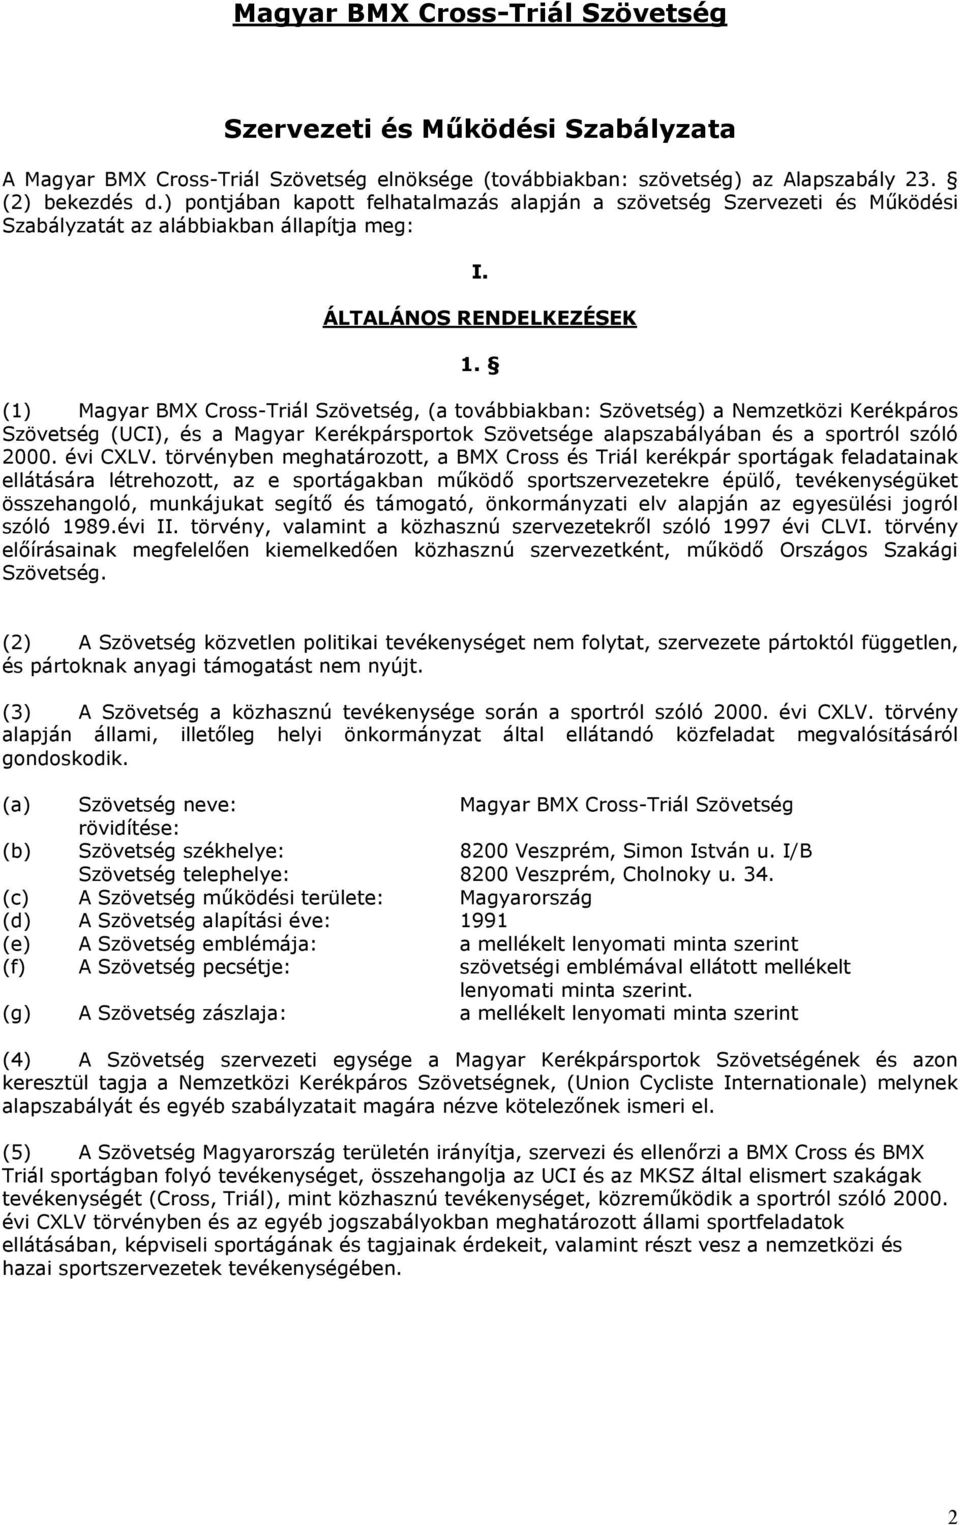 (1) Magyar BMX Cross-Triál Szövetség, (a továbbiakban: Szövetség) a Nemzetközi Kerékpáros Szövetség (UCI), és a Magyar Kerékpársportok Szövetsége alapszabályában és a sportról szóló 2000. évi CXLV.